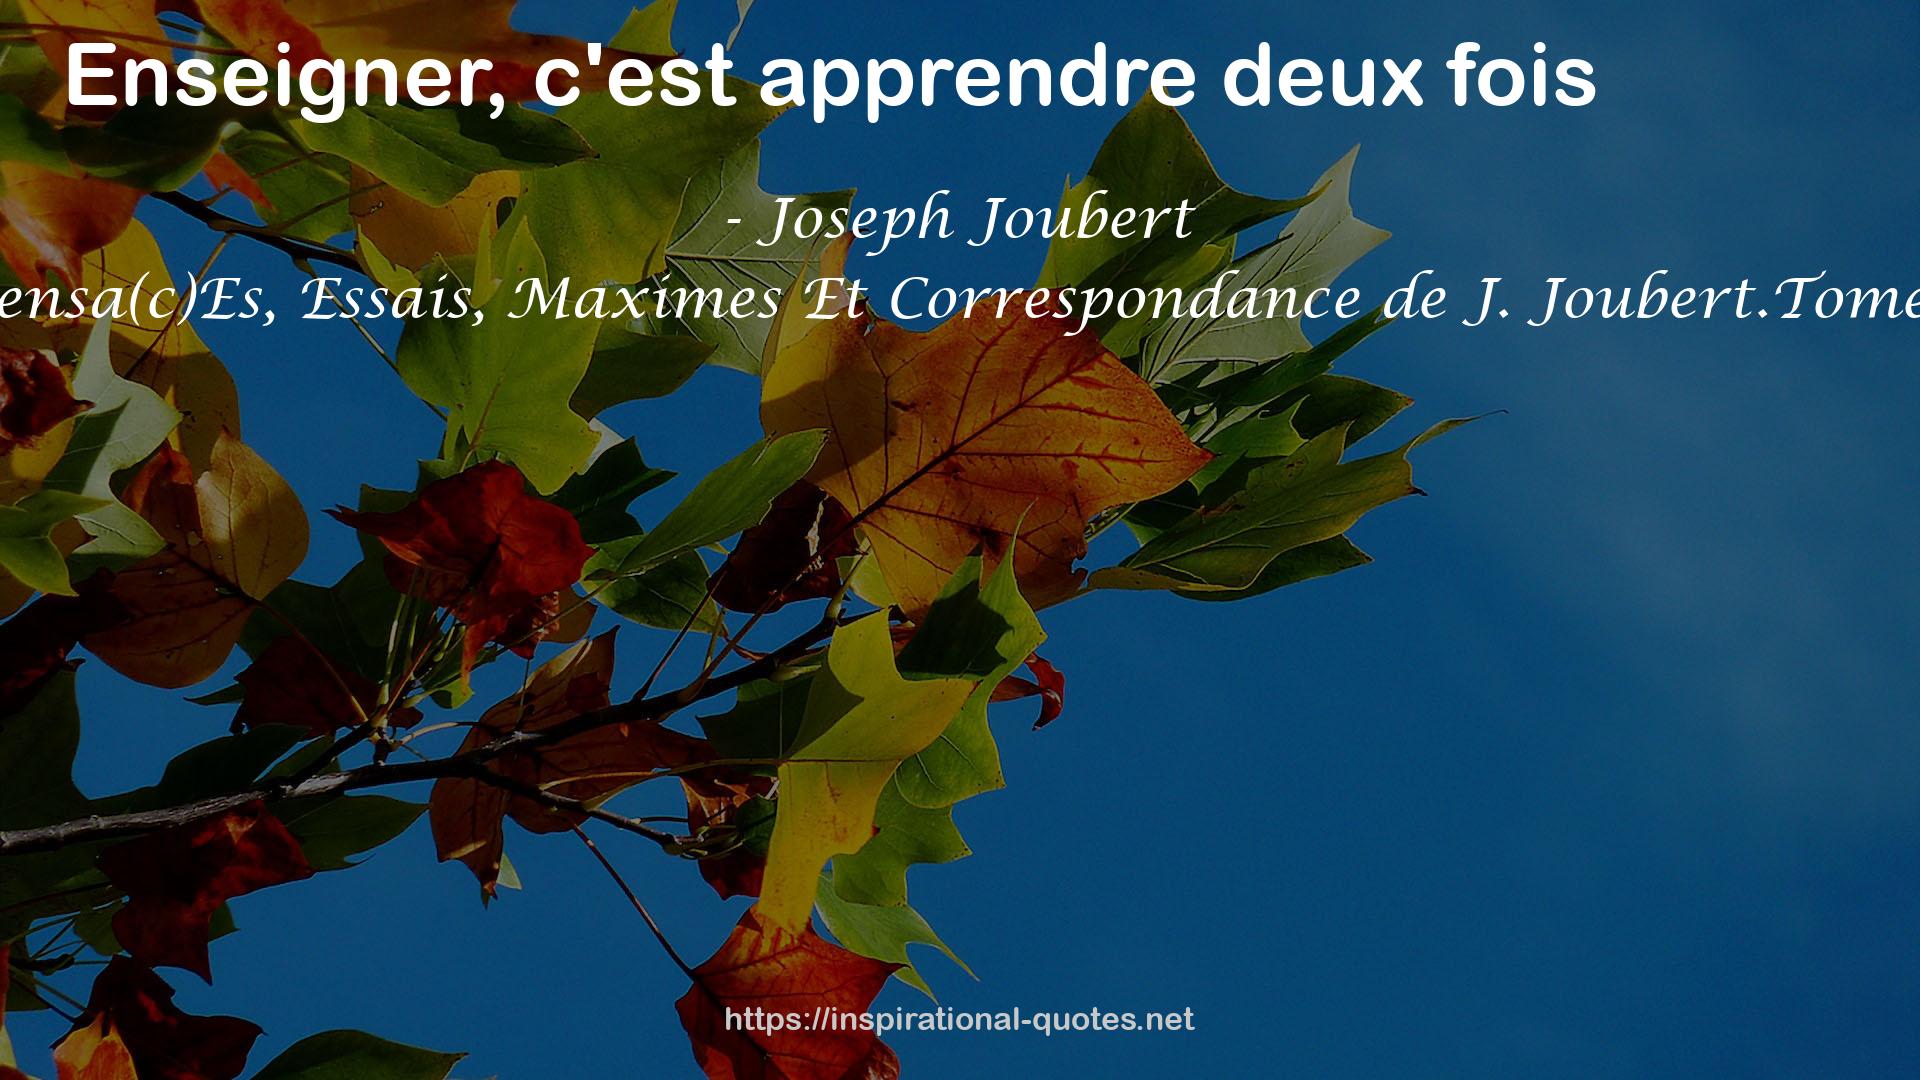 Pensa(c)Es, Essais, Maximes Et Correspondance de J. Joubert.Tome 1 QUOTES